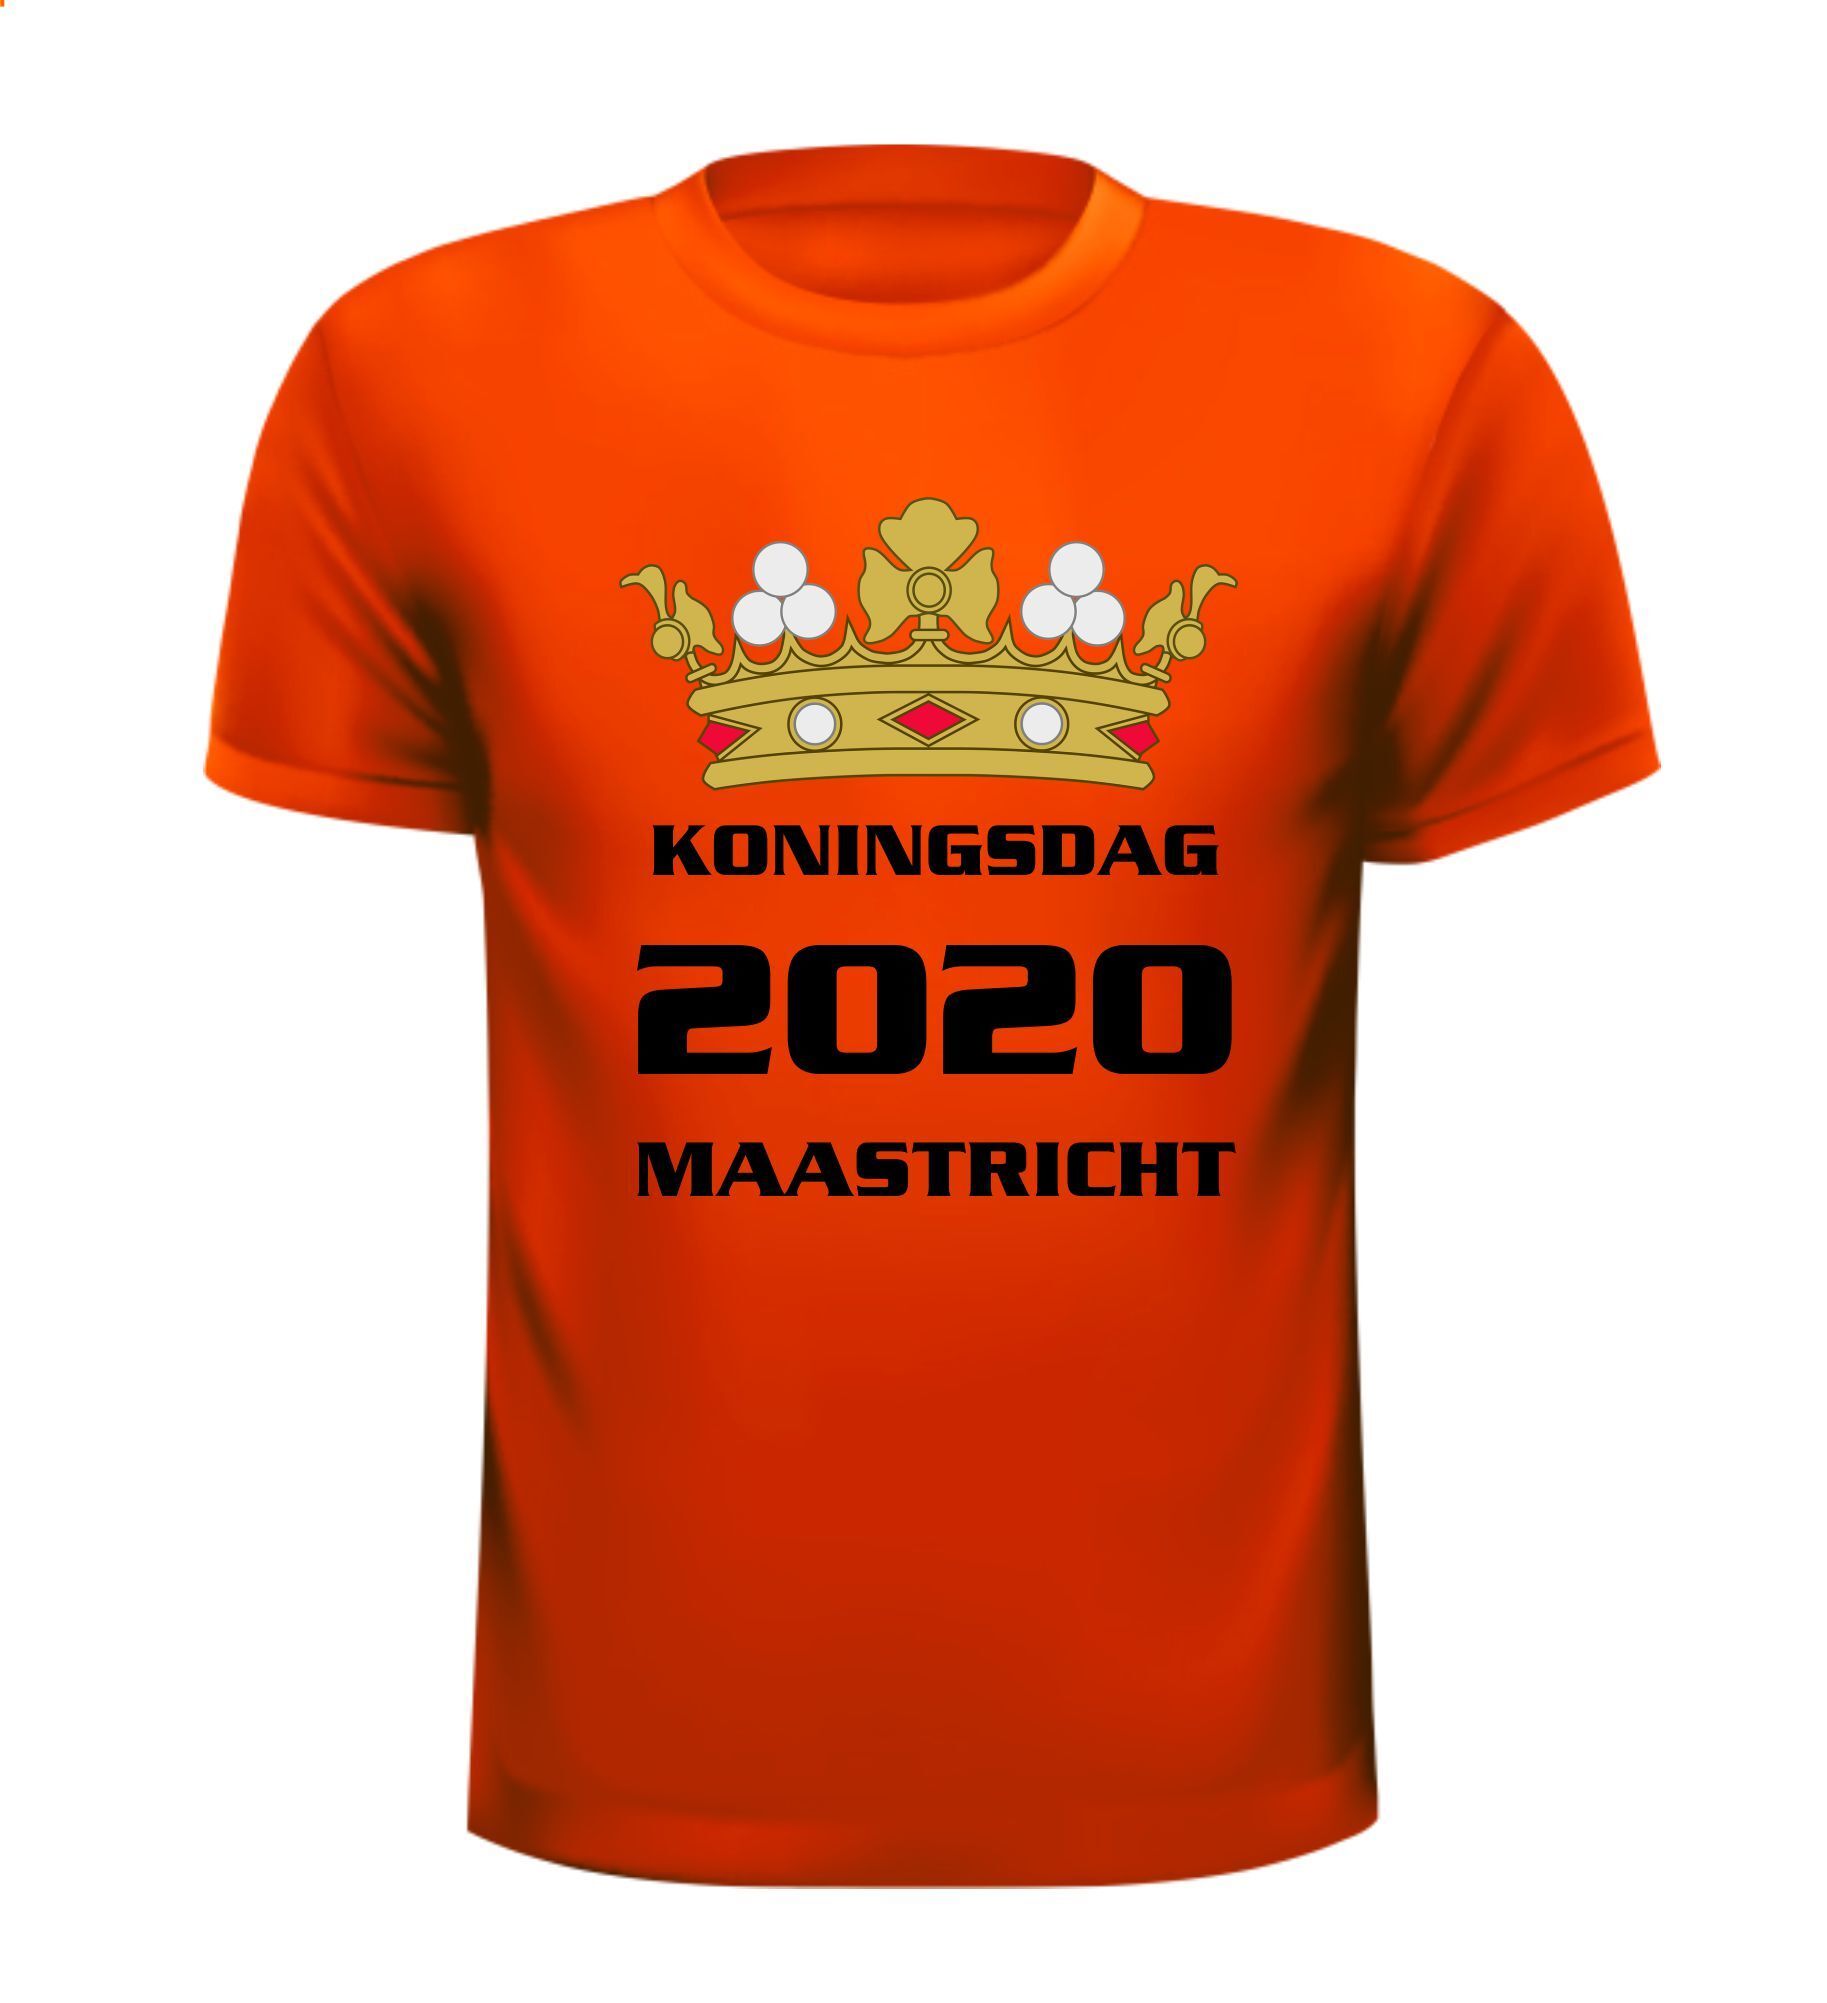 T-shirt Koningsdag 2020 Maastricht